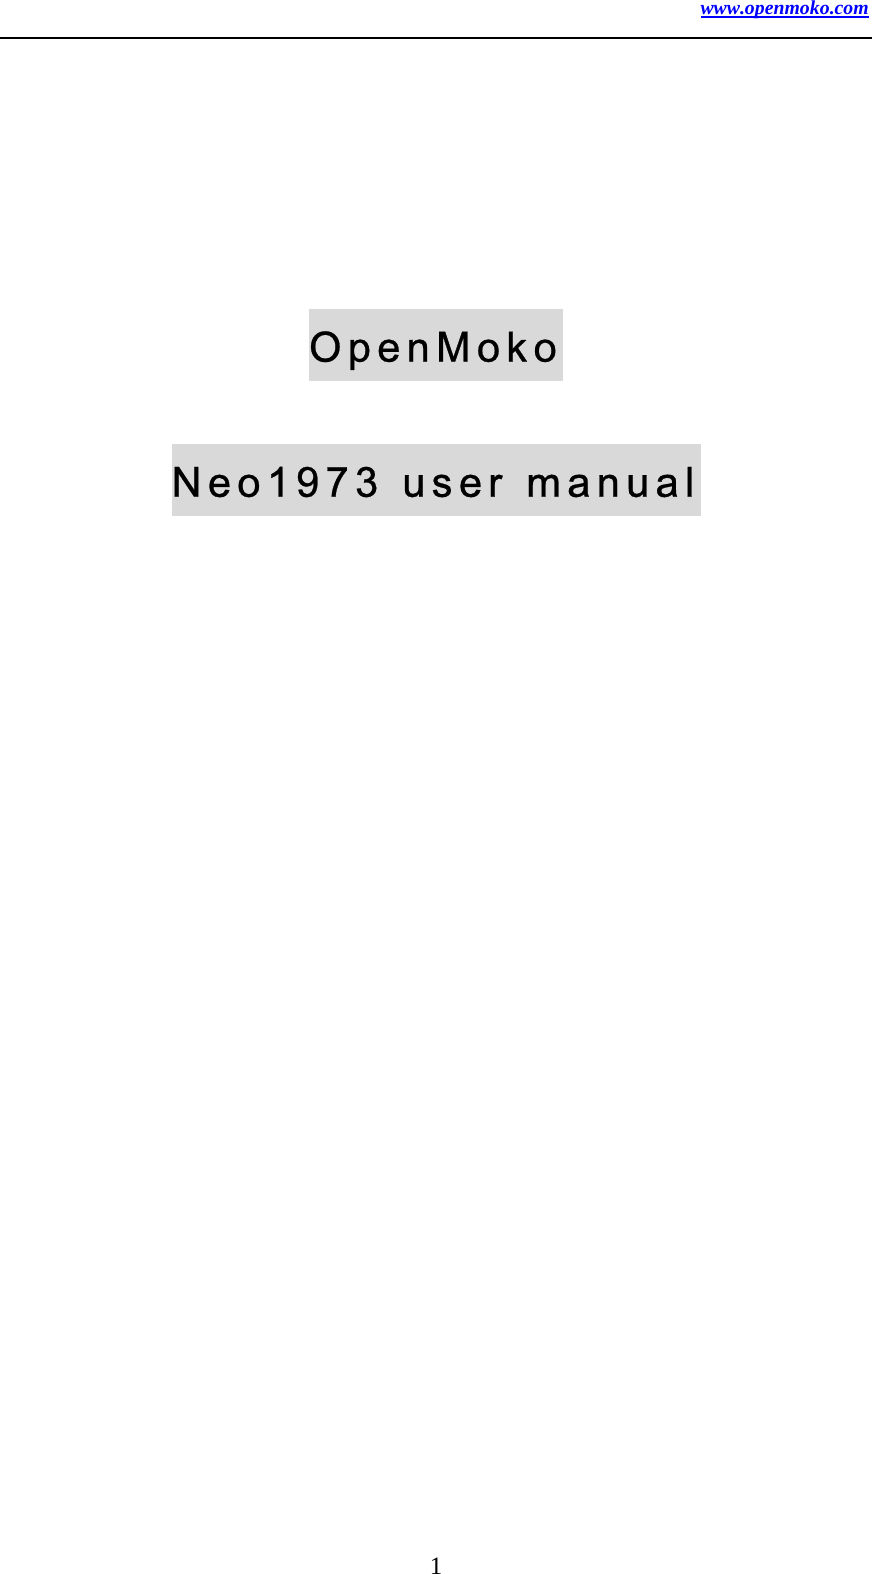 www.openmoko.com 1   OpenMoko Neo1973 user manual 